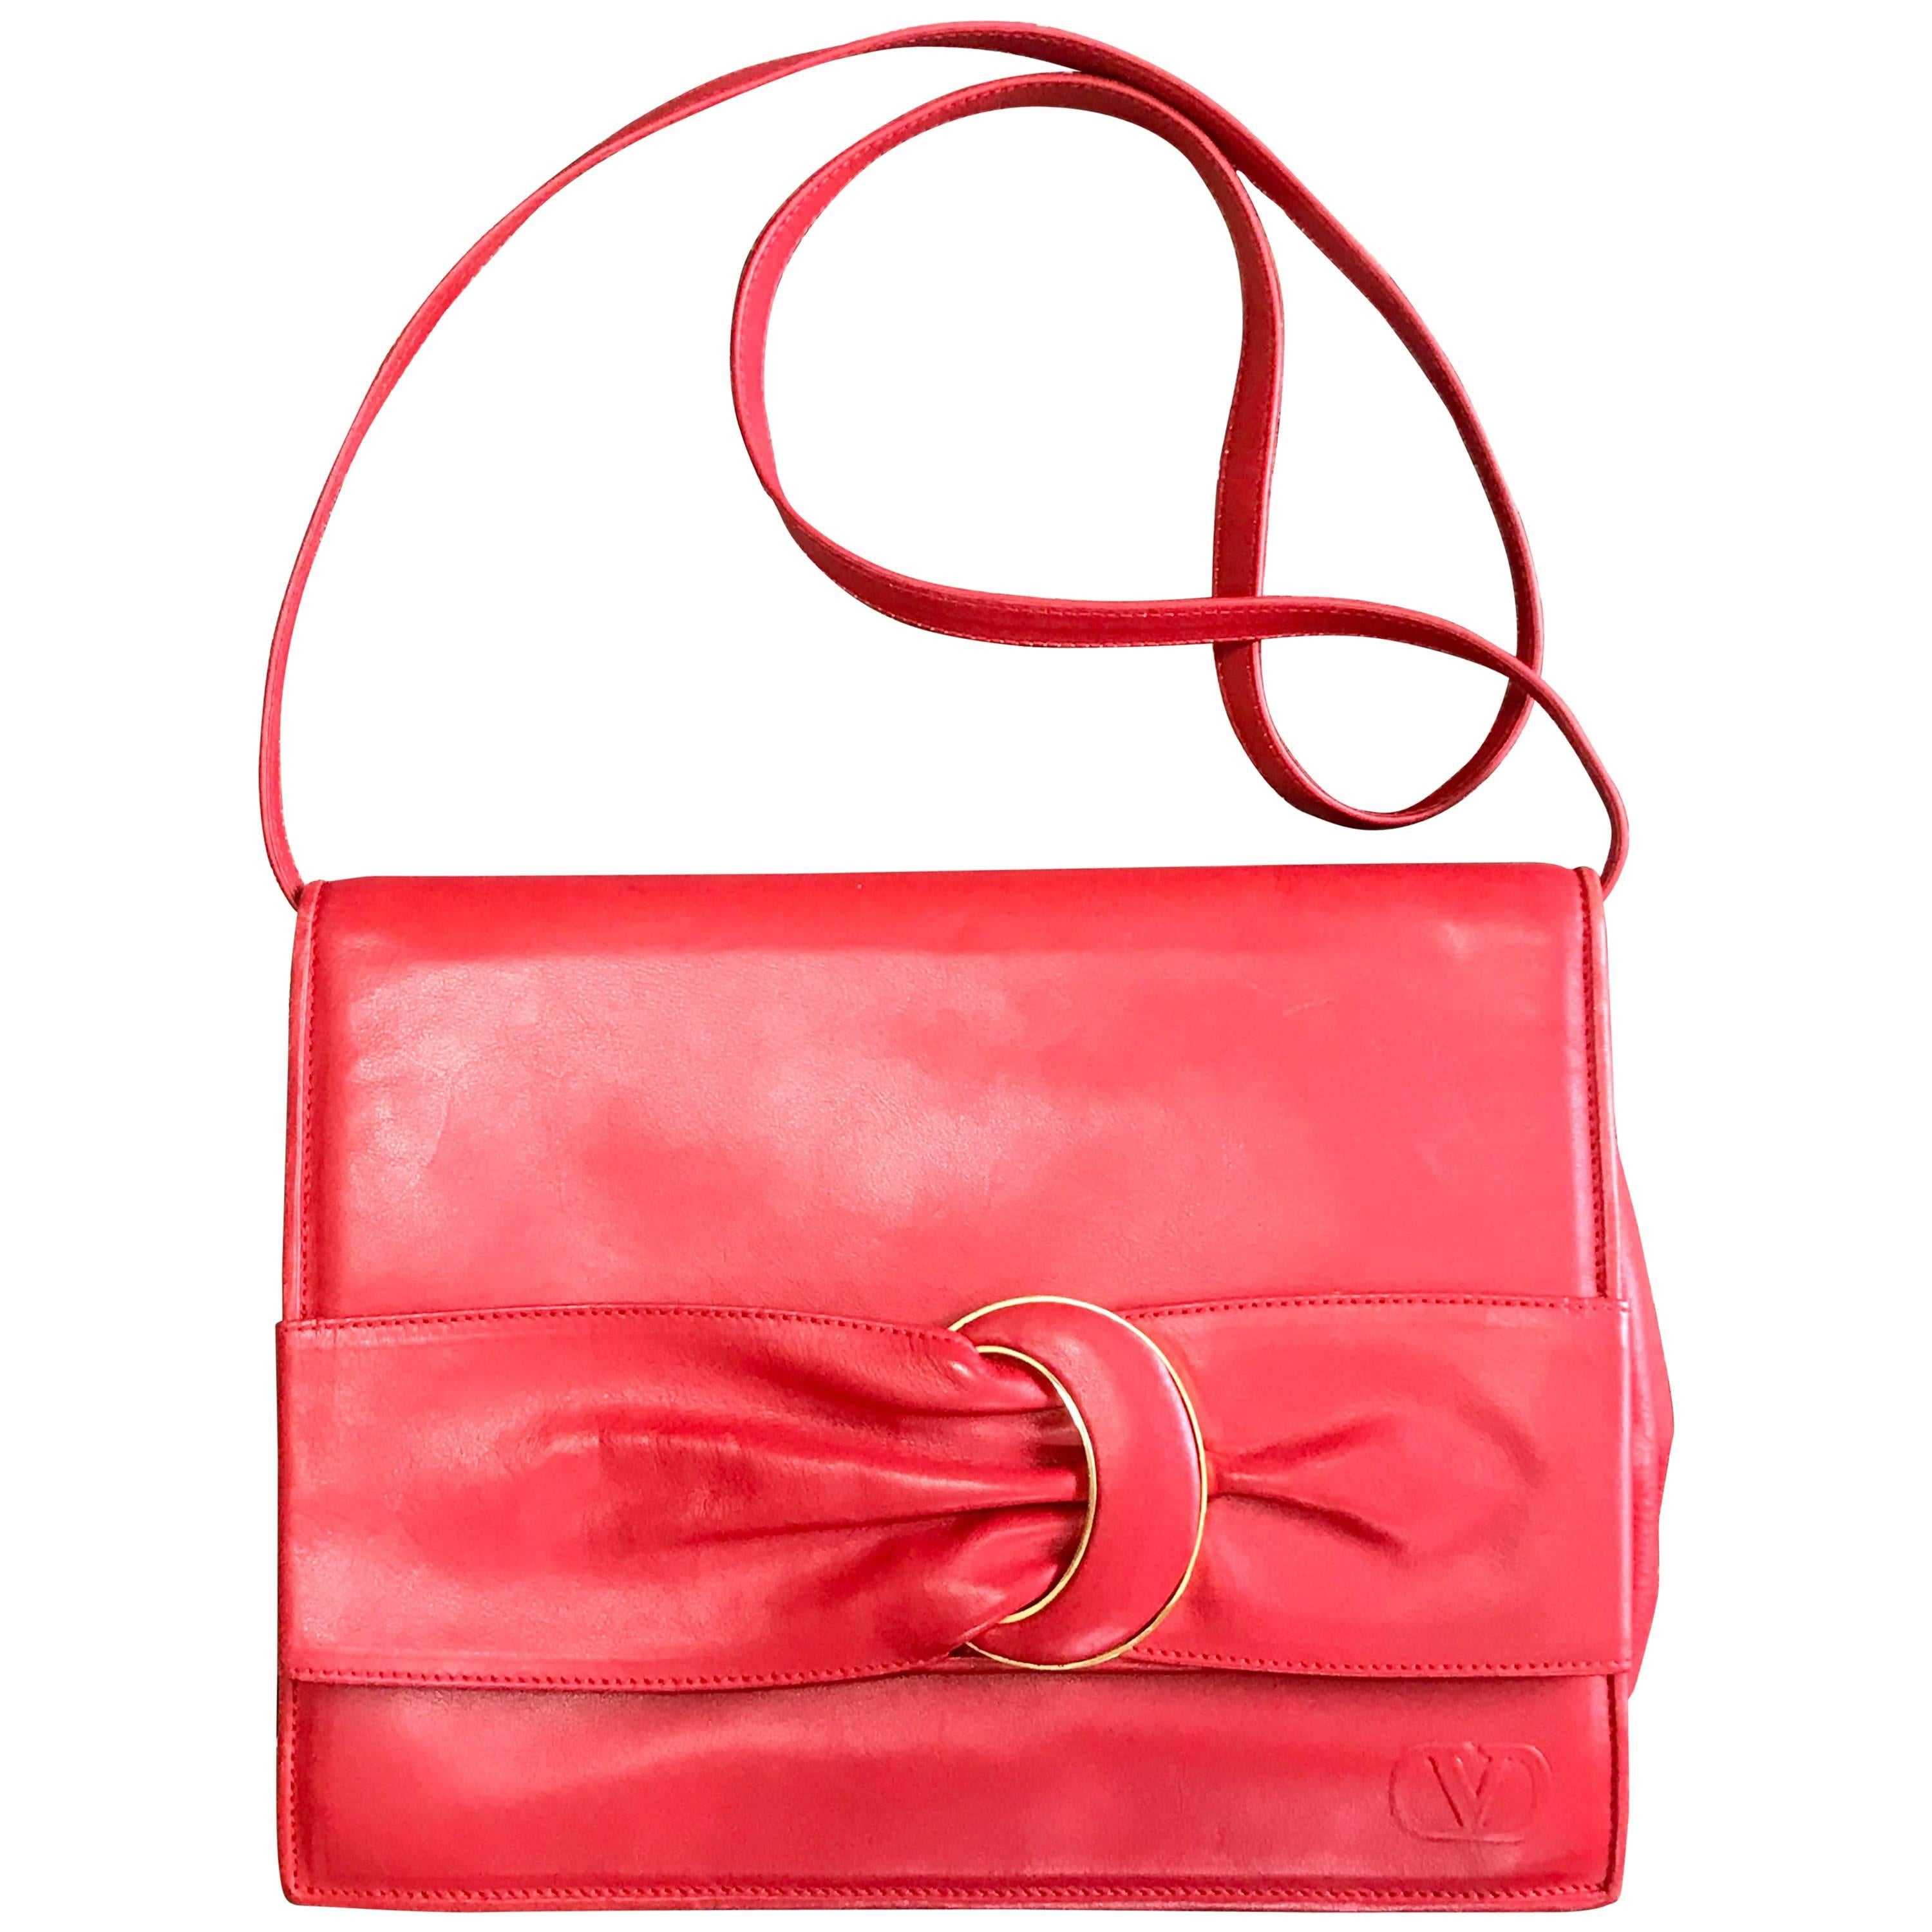 Vintage Valentino Garavani orange red leather clutch shoulder bag with buckle. For Sale